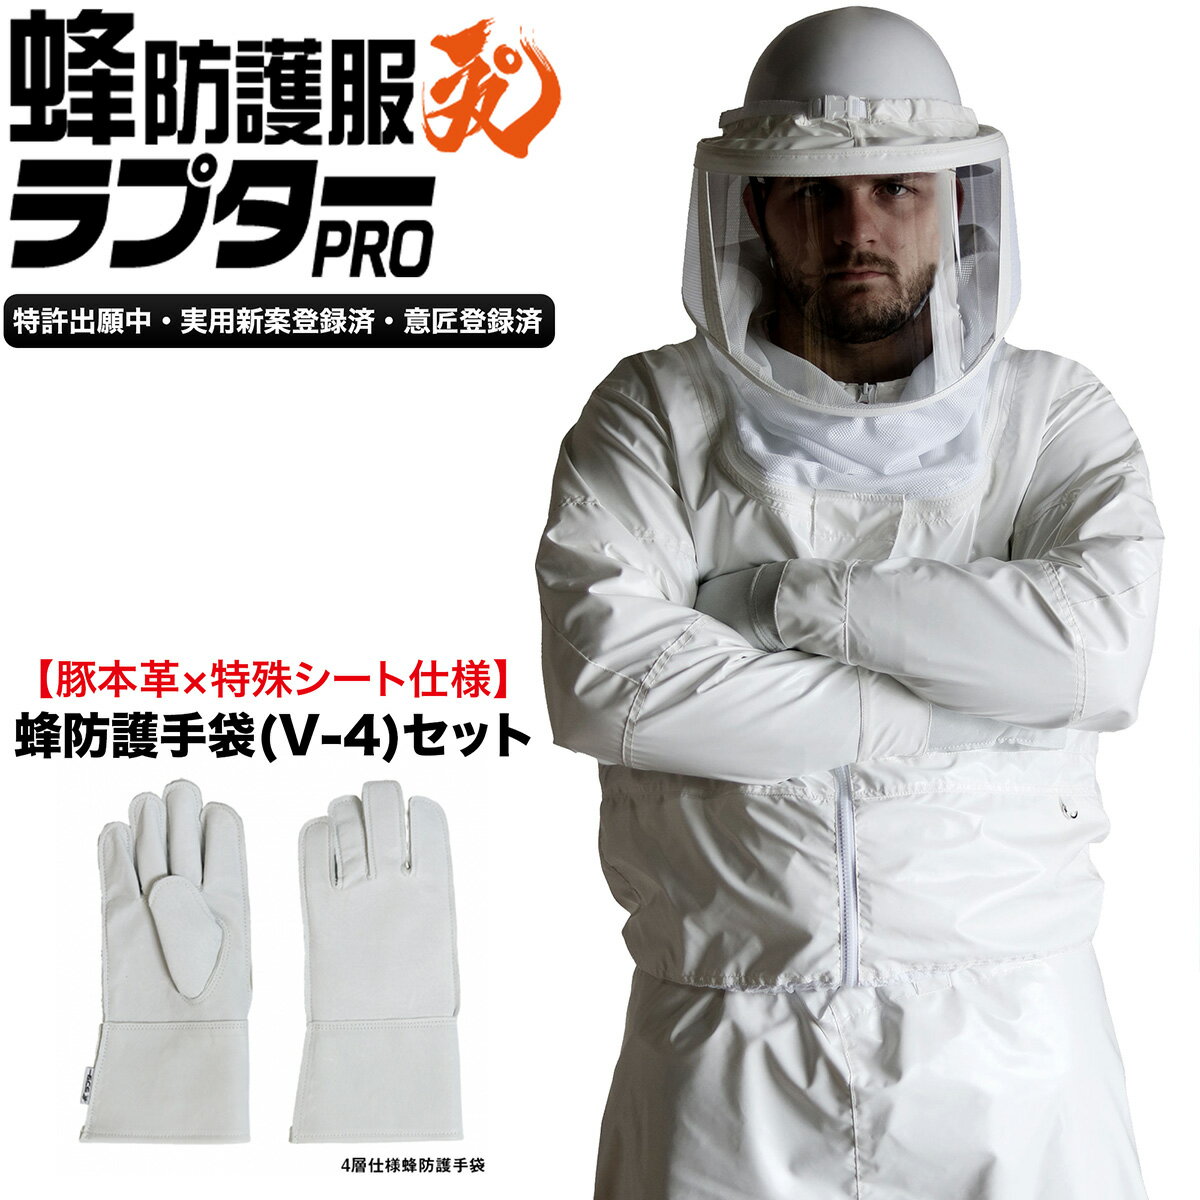 【蜂防護手袋セット】 蜂防護服 ラプターPRO V-2000